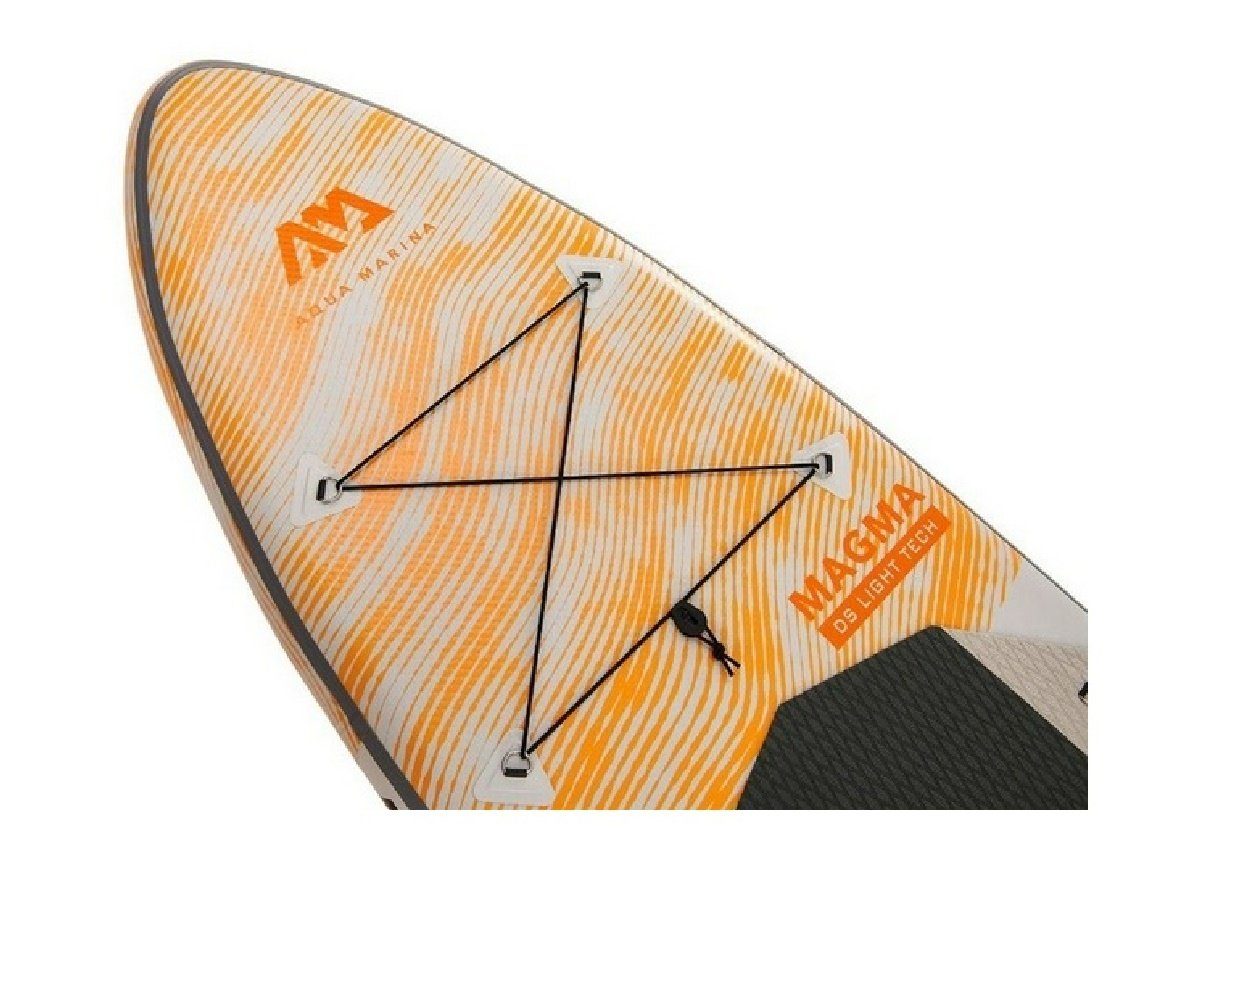 Aqua SUP-Board Marina